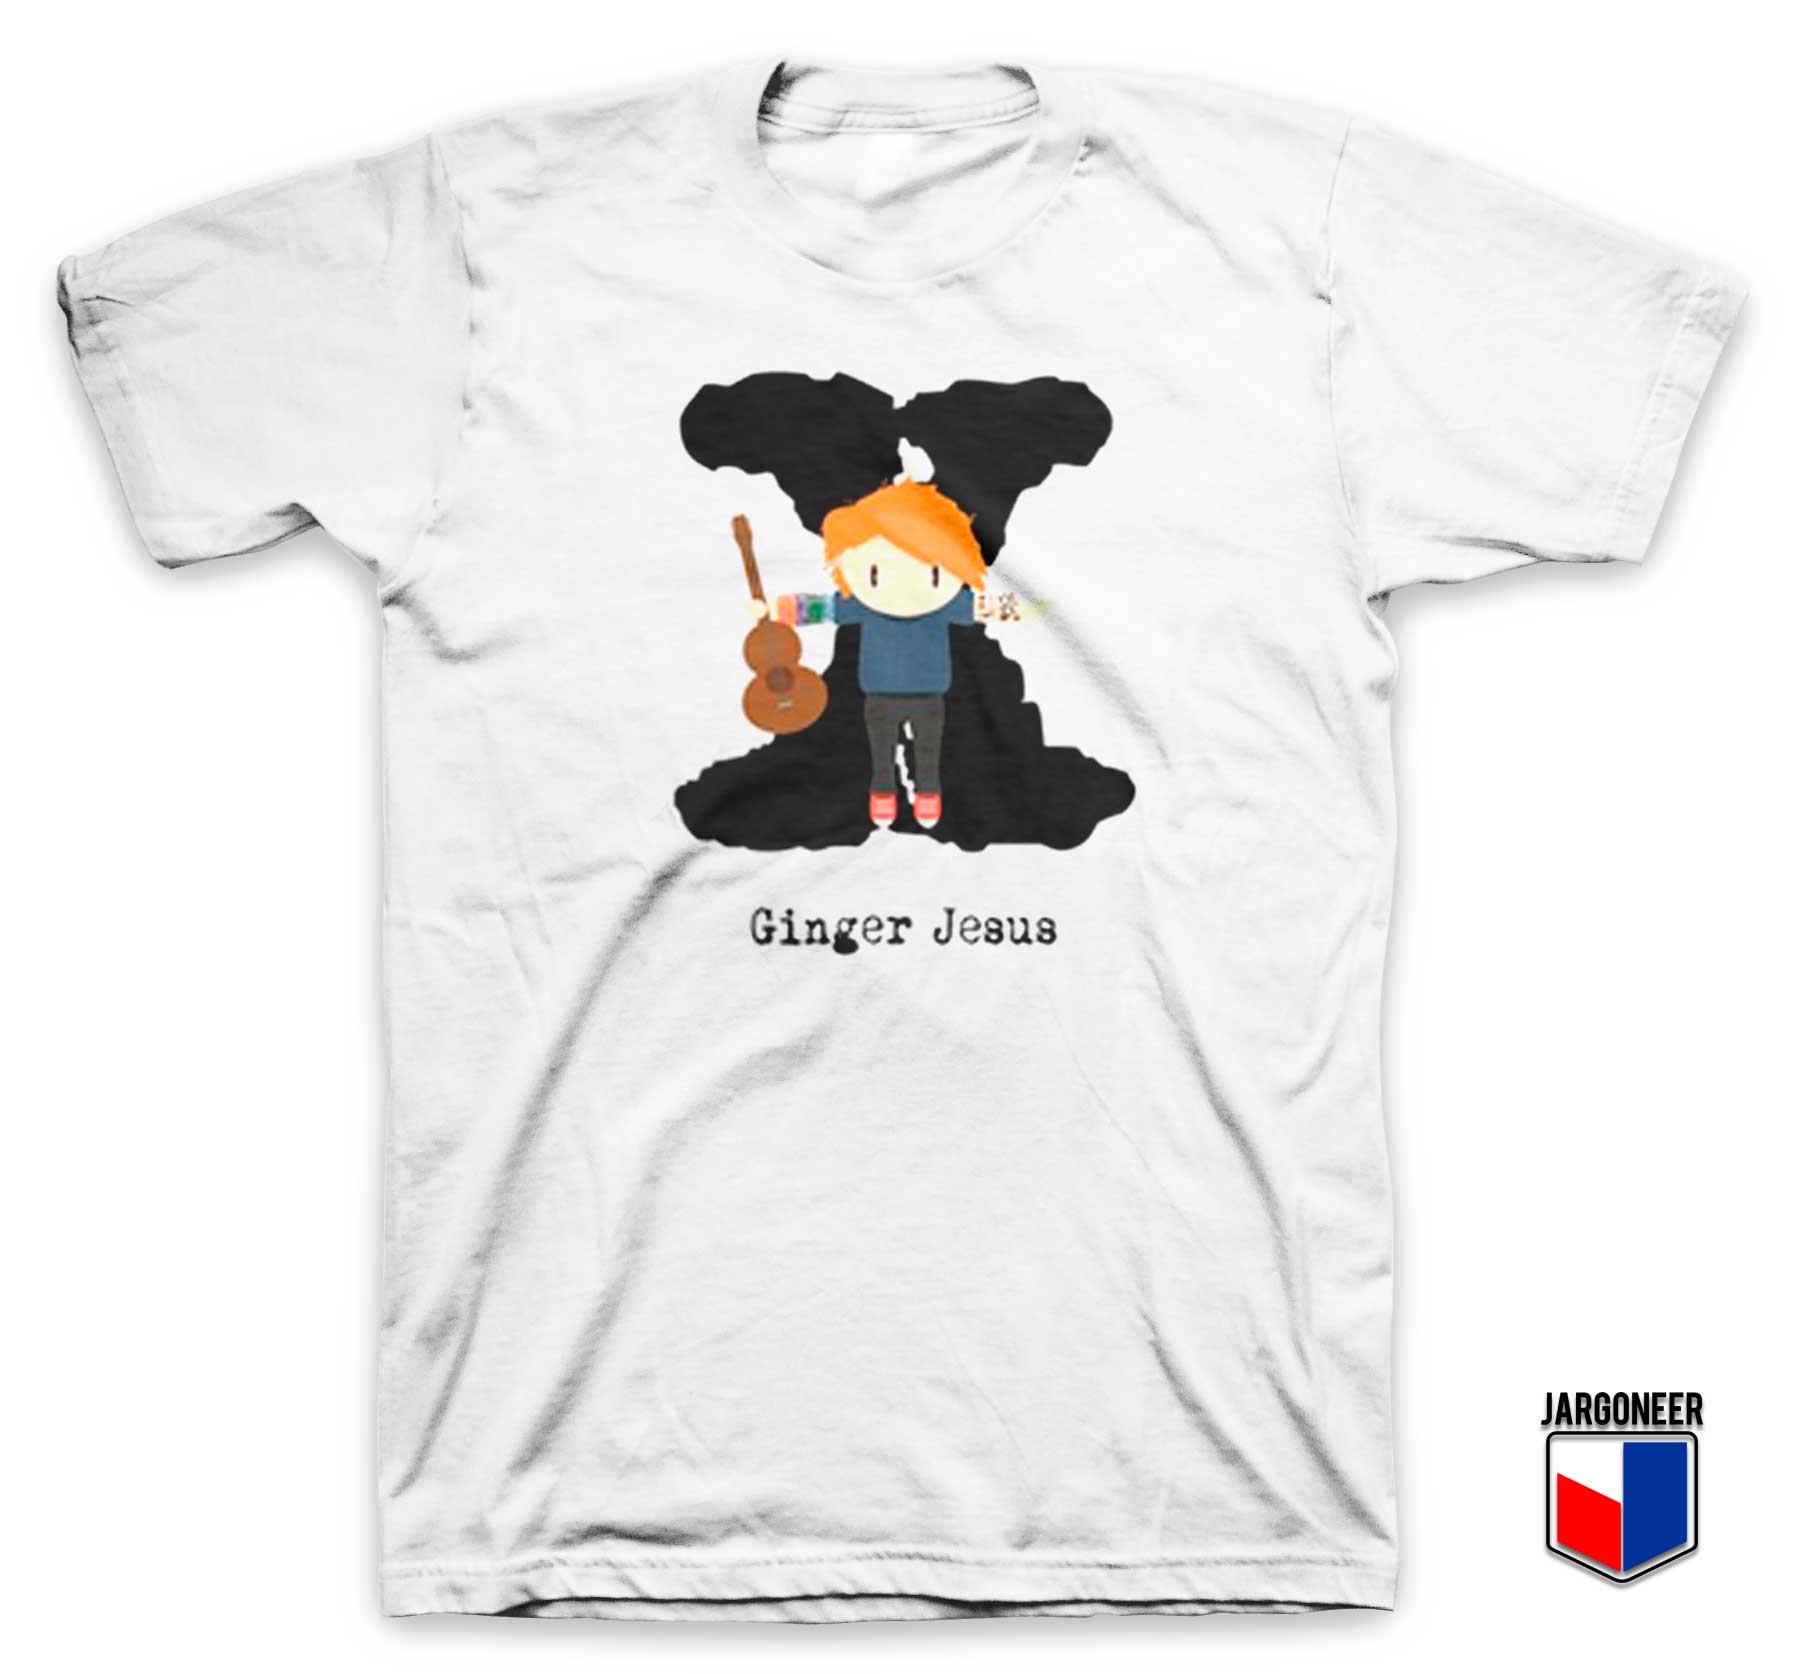 Ginger Jesus Parody T Shirt - Shop Unique Graphic Cool Shirt Designs